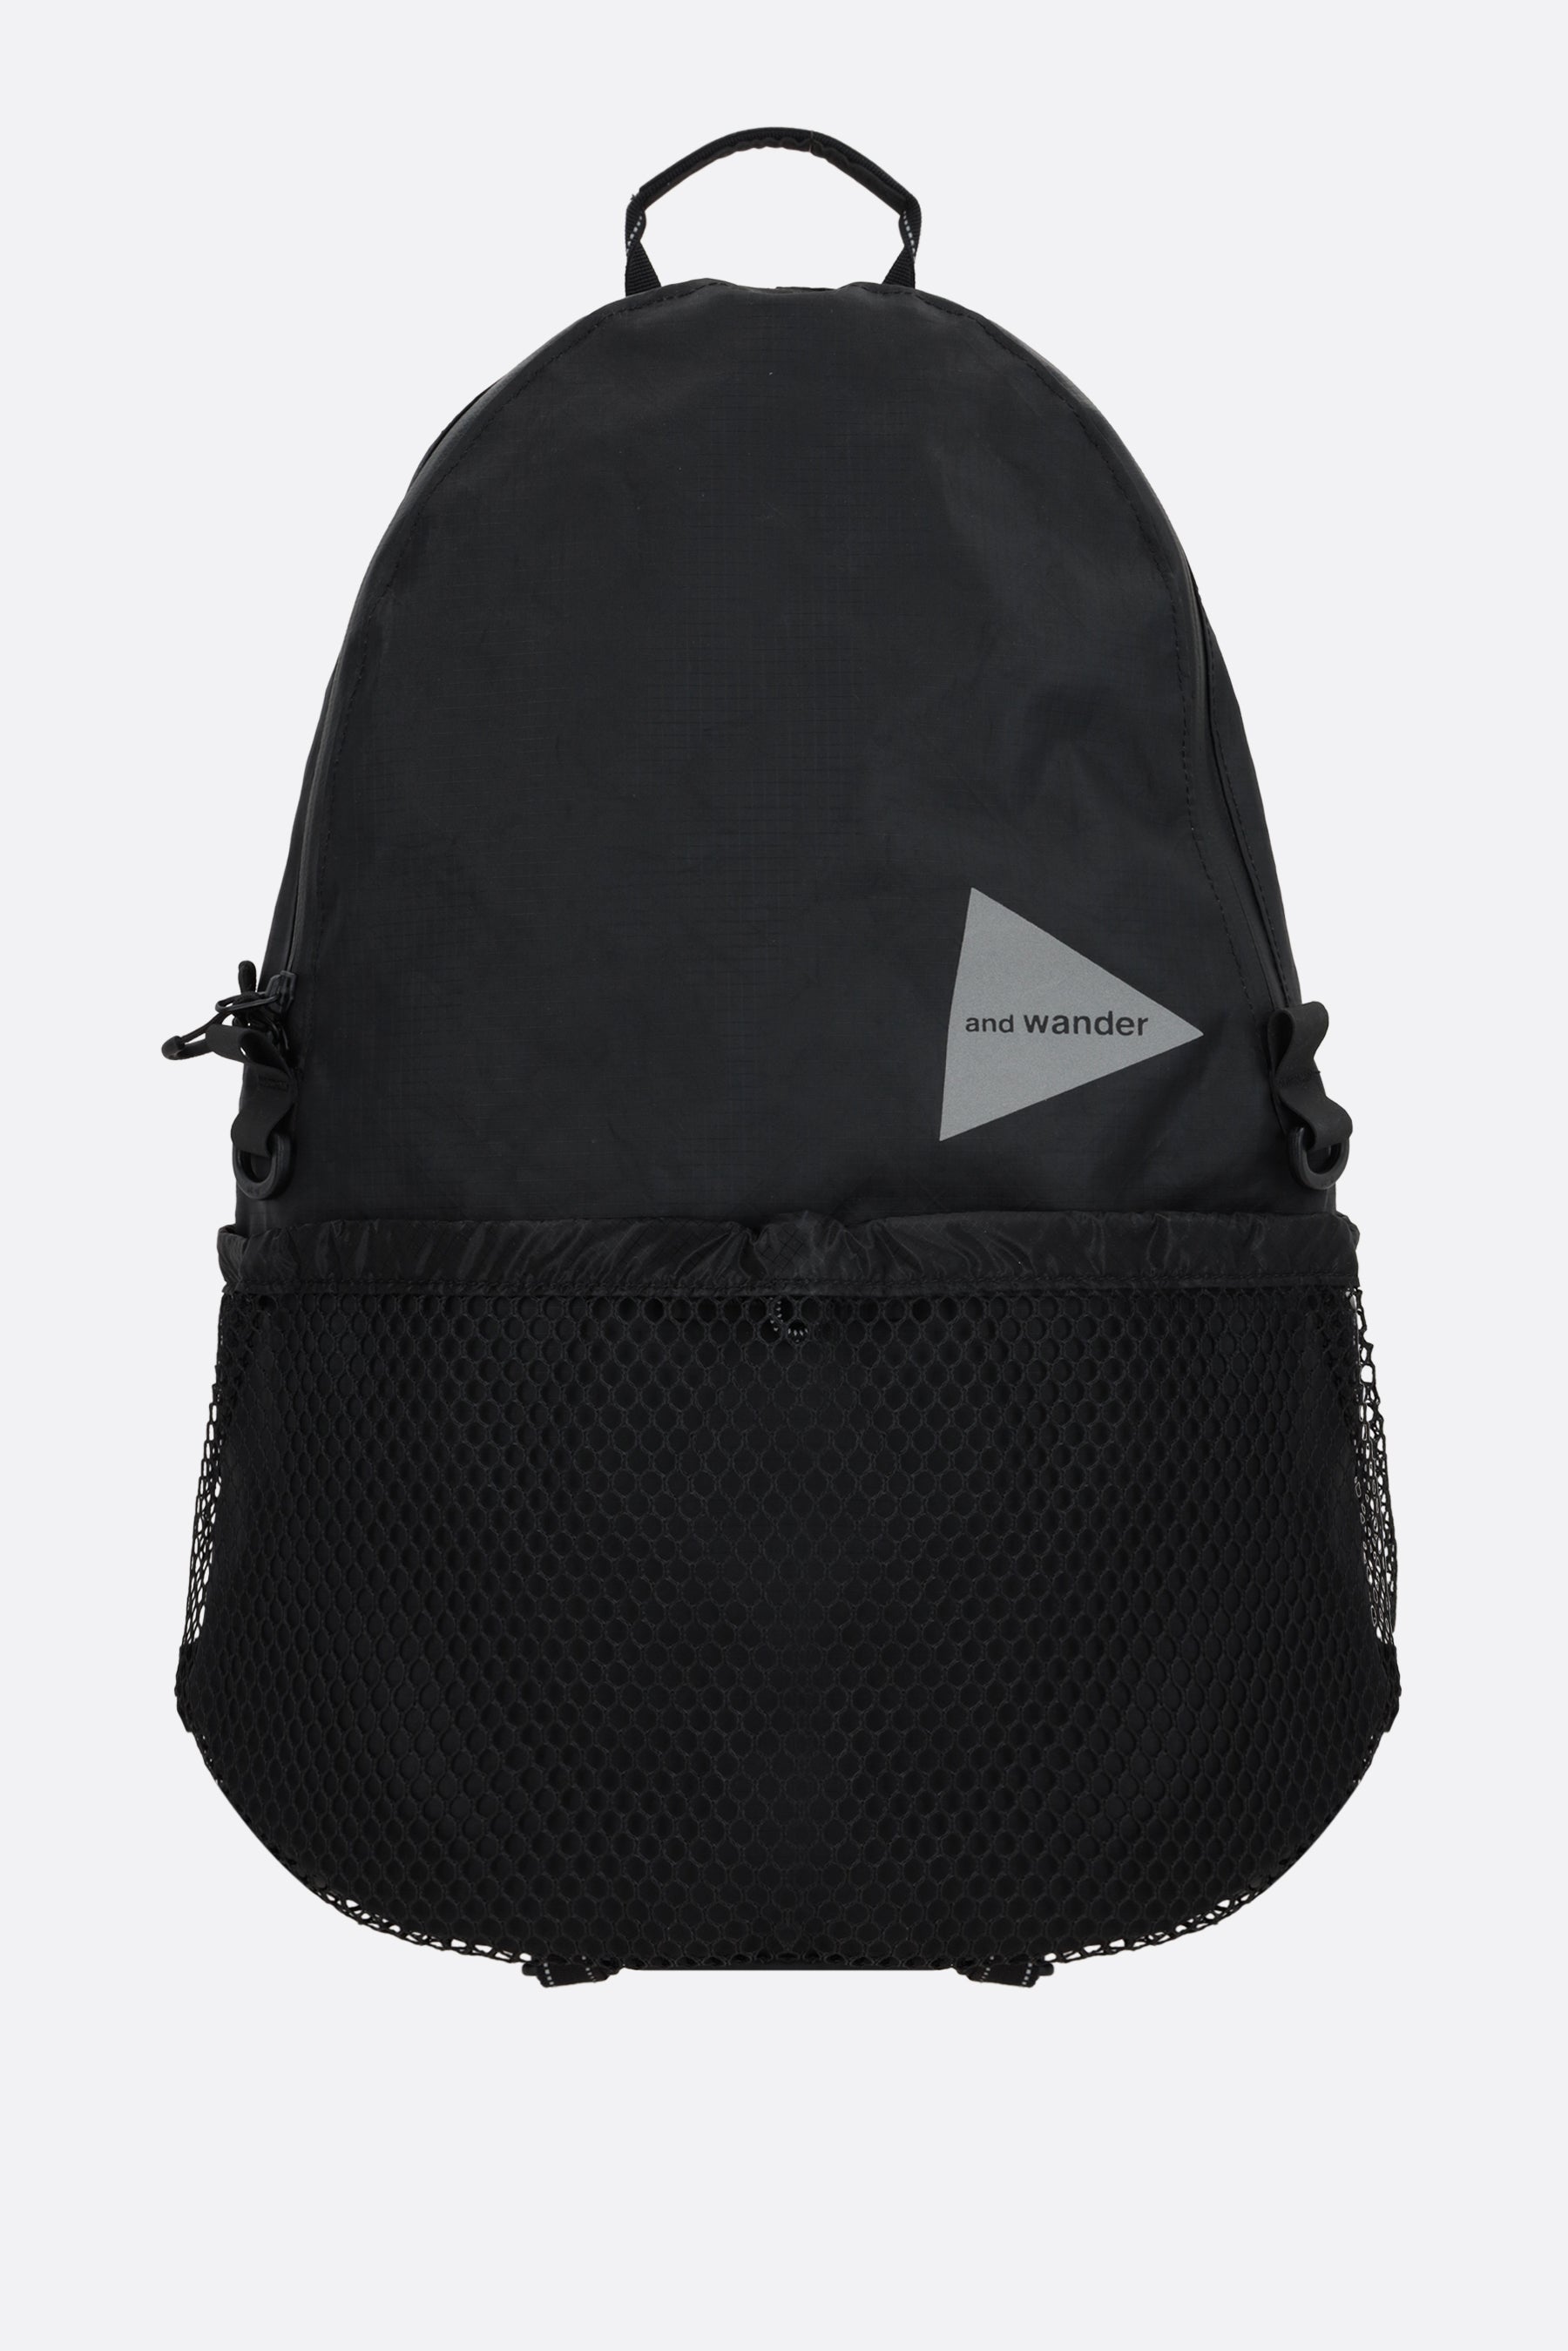 20L backpack in ECOPAK nylon